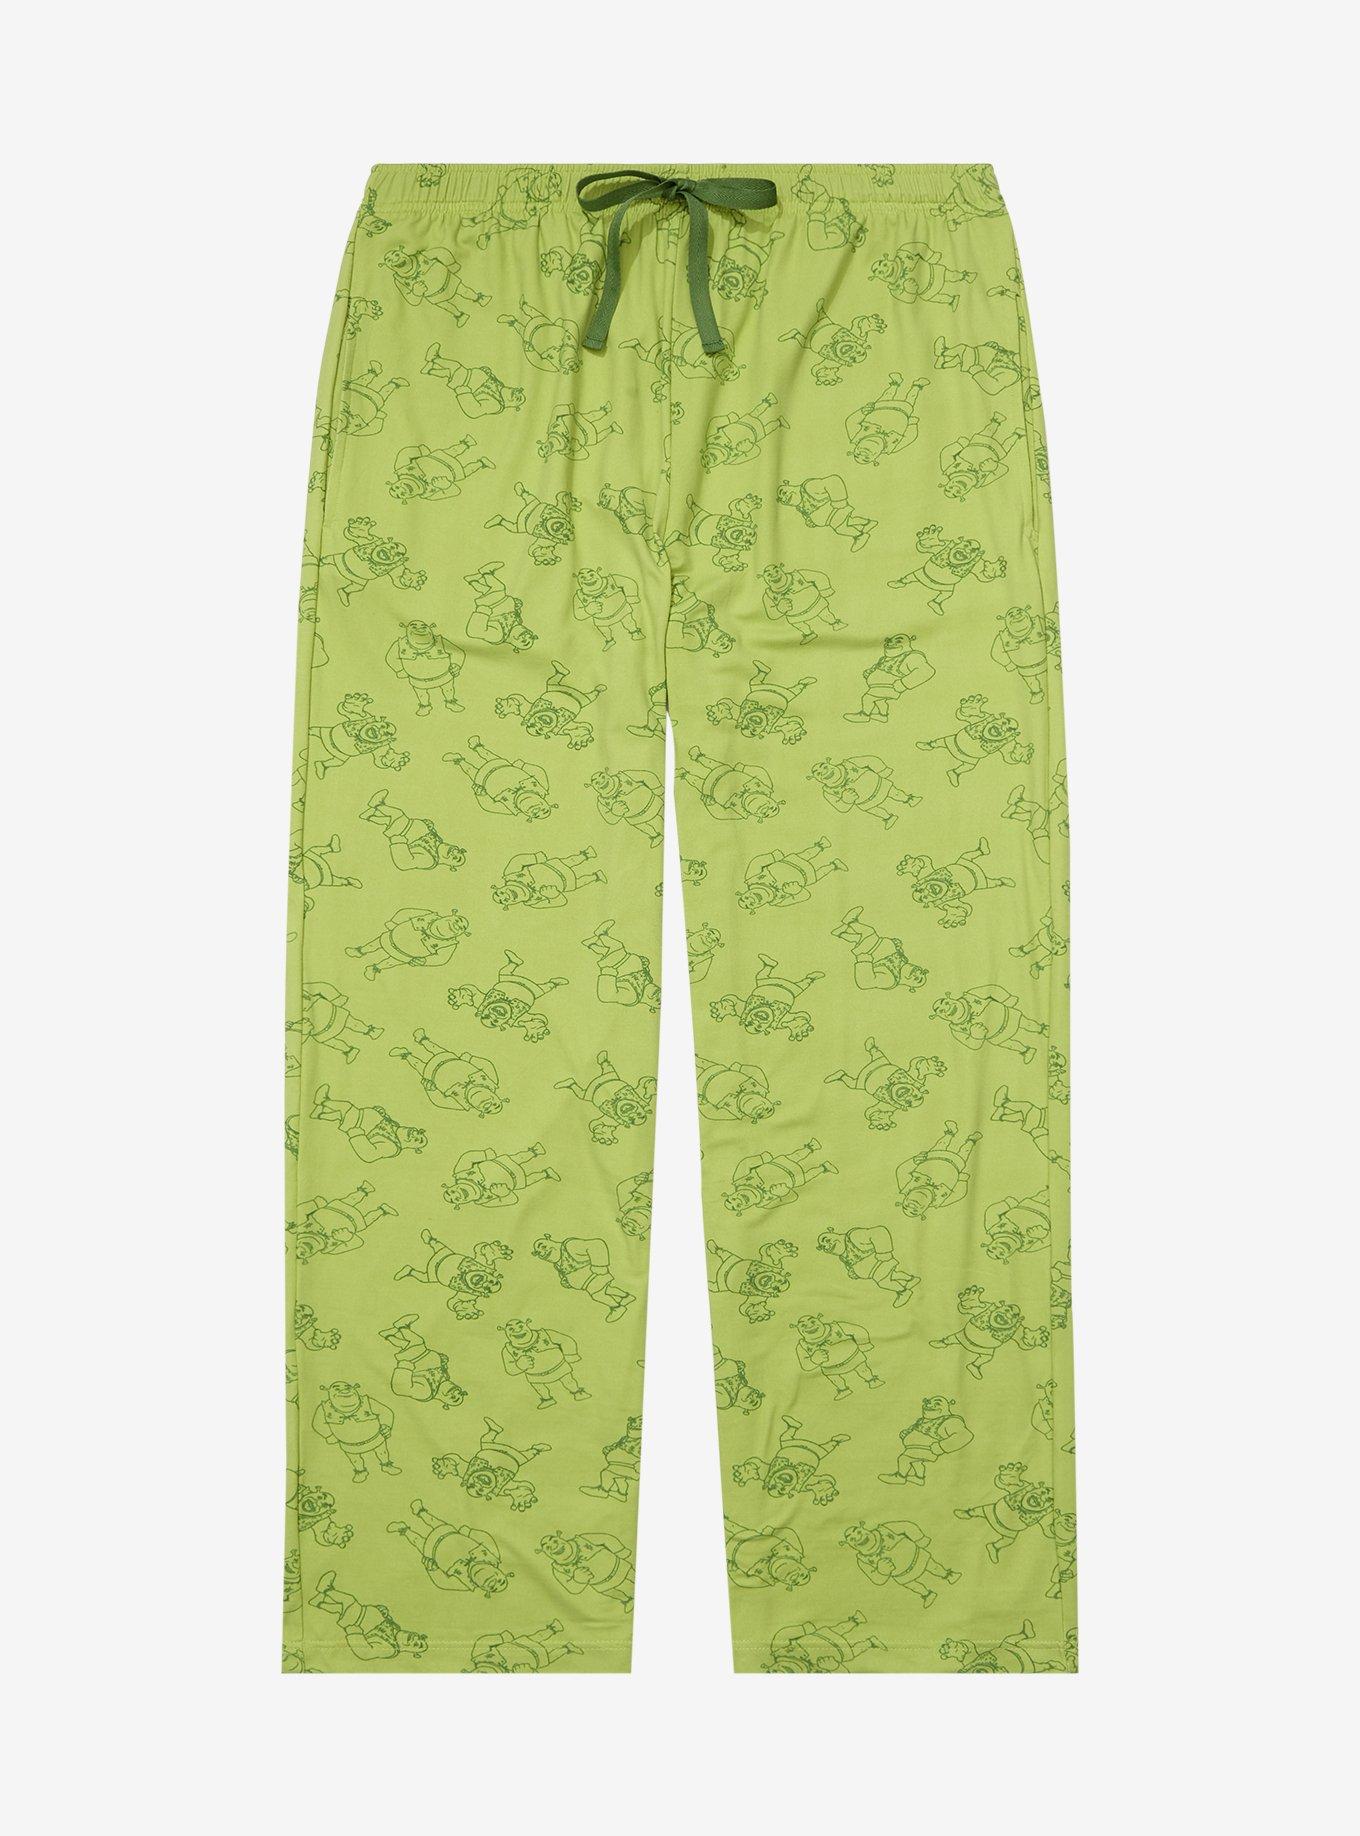 Hot Topic Shrek Film Scenes Girls Pajama Pants Plus